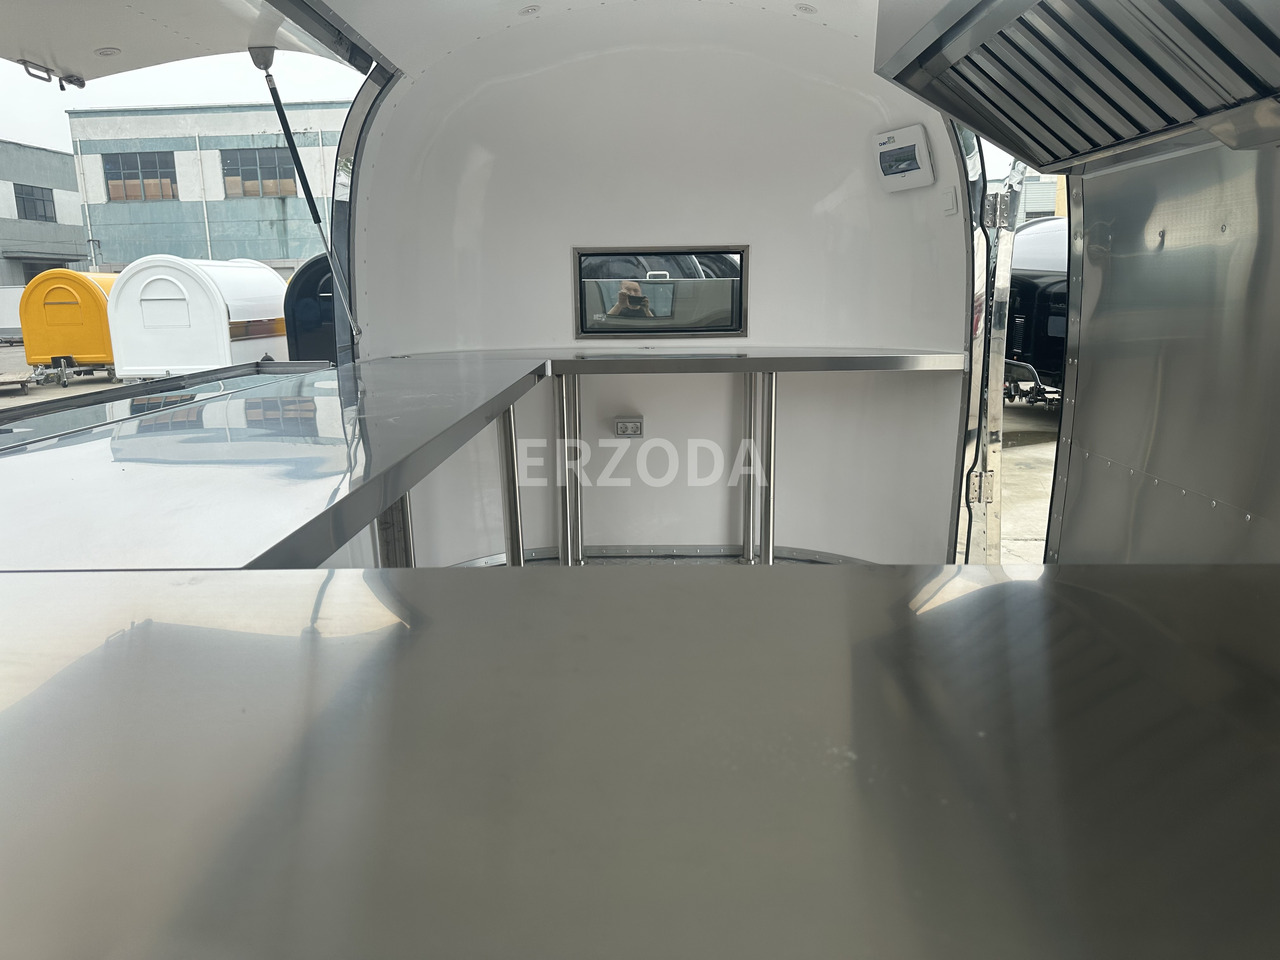 جديد عربة الطعام ERZODA food trailer/food truck/hamburger trailer: صور 7